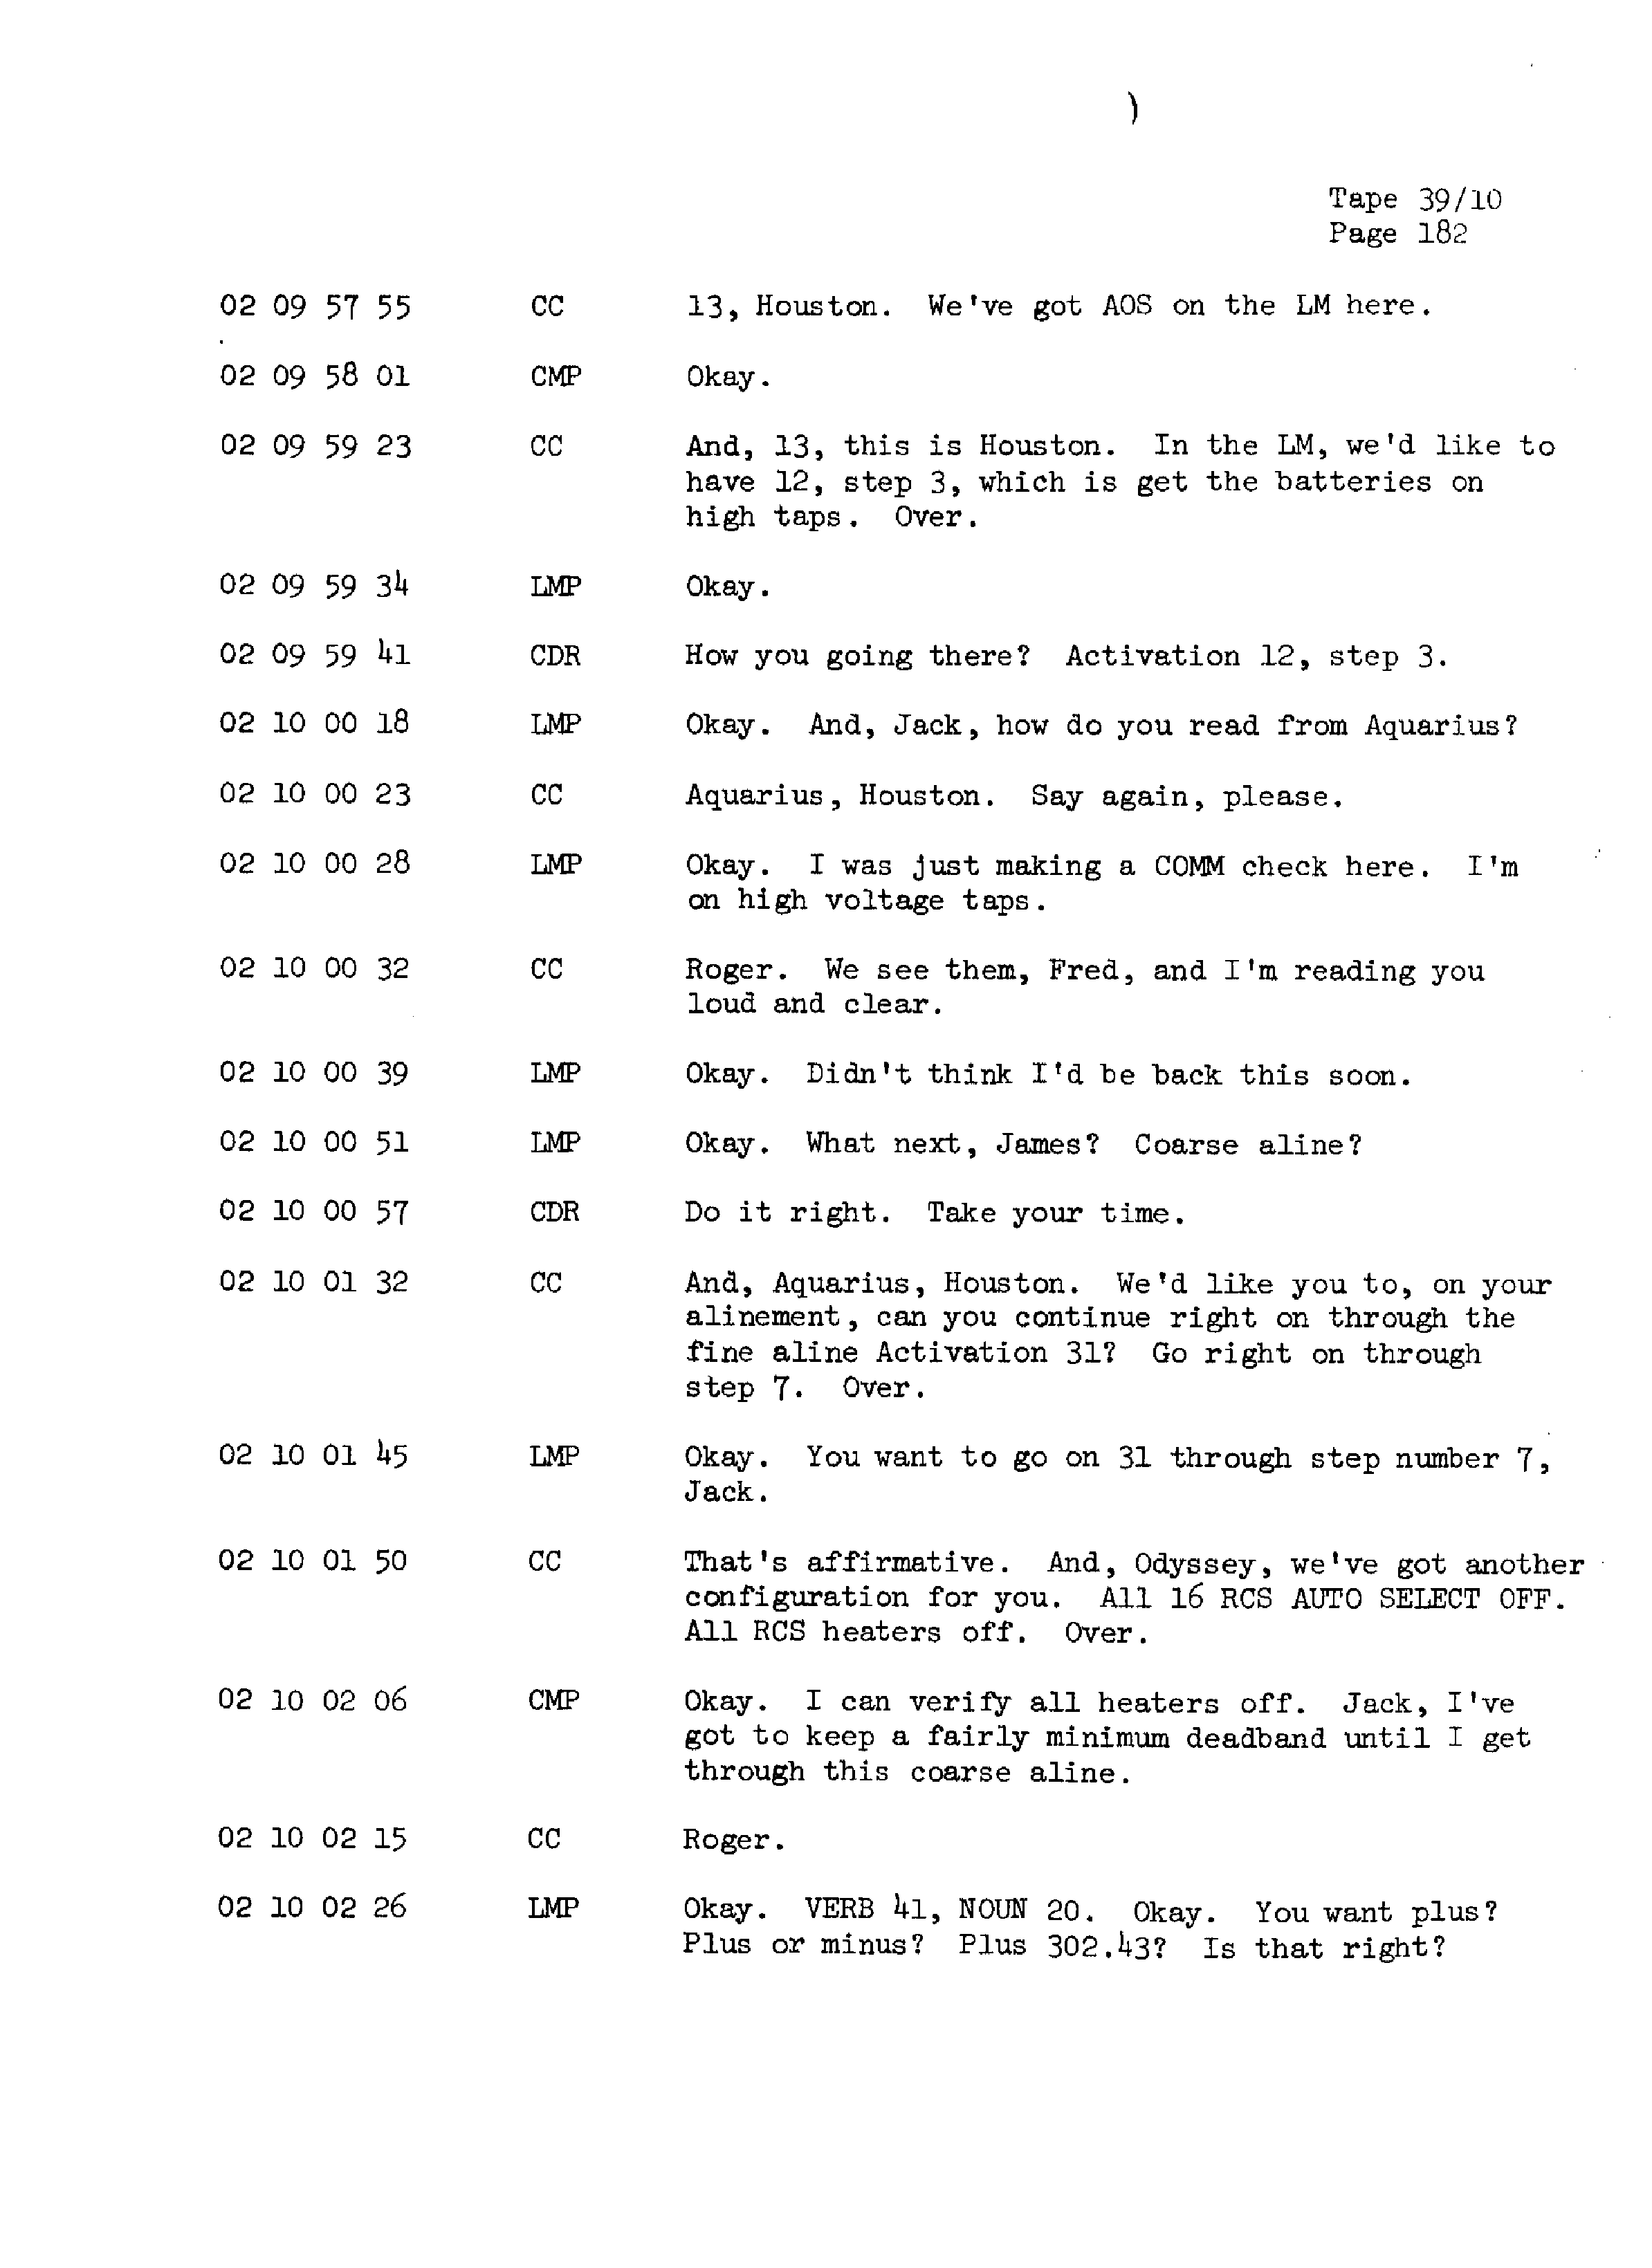 Page 189 of Apollo 13’s original transcript